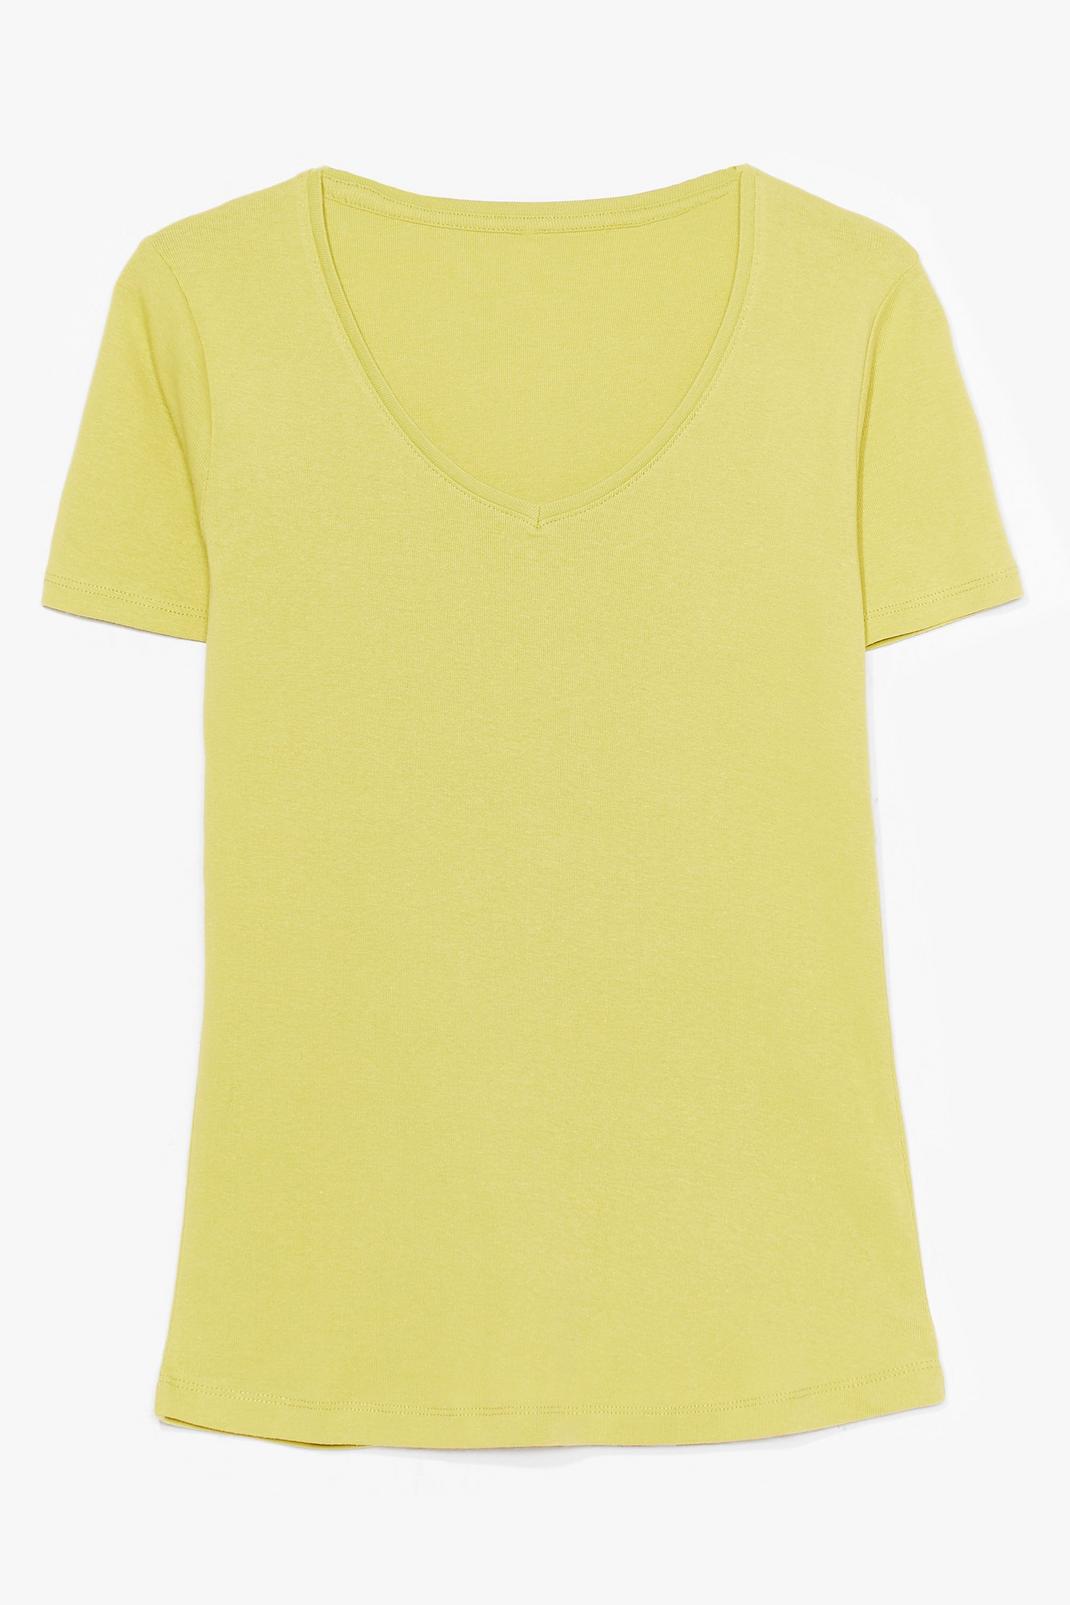 Lime V Neck Short Sleeve T-Shirt image number 1